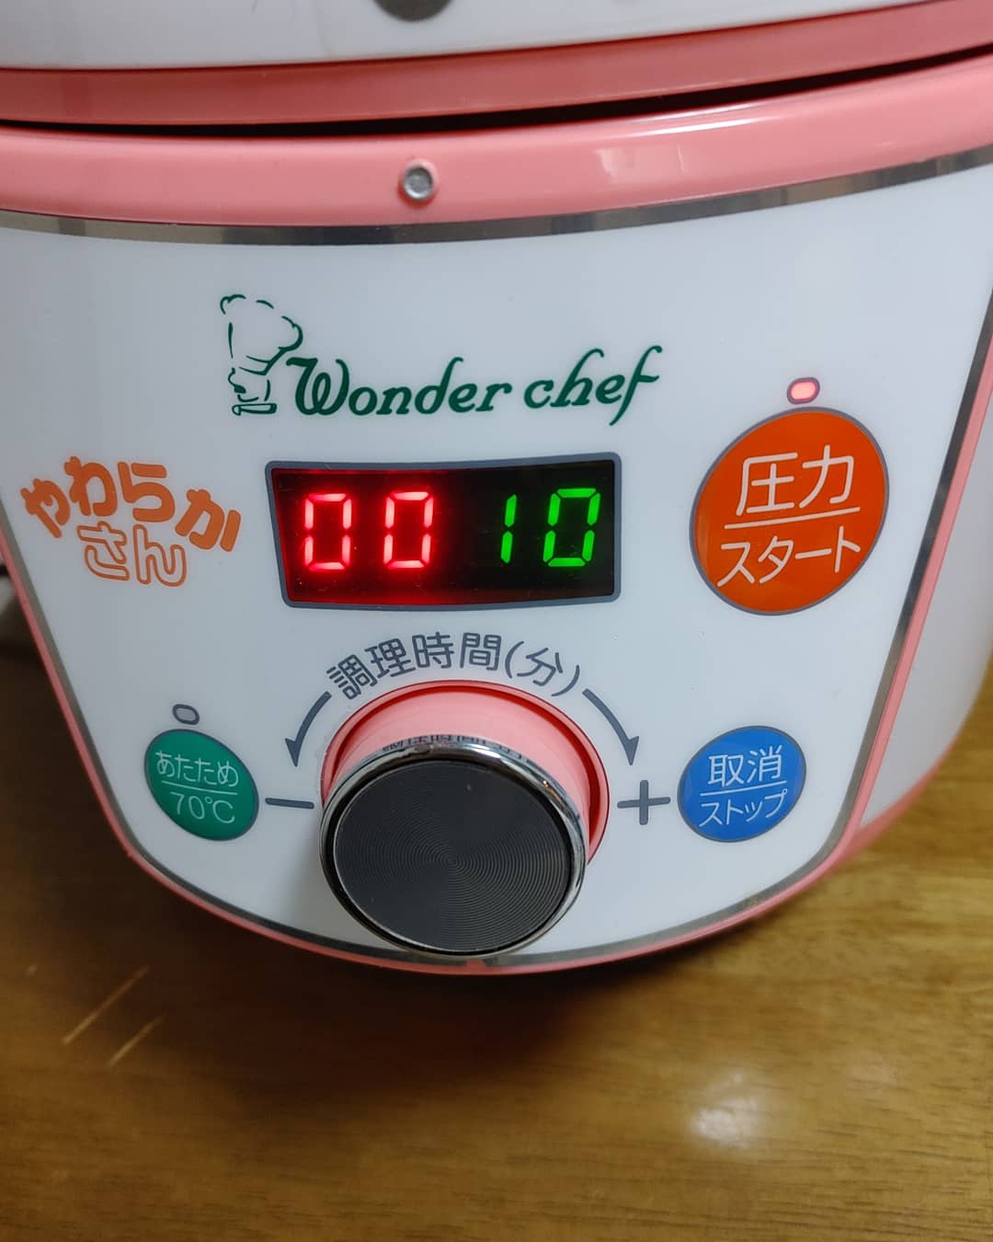 Wonder chef(ワンダーシェフ) 家庭用マイコン電気圧力鍋 OEDE30 「やわらかさん」の良い点・メリットに関するまなみんさんの口コミ画像1